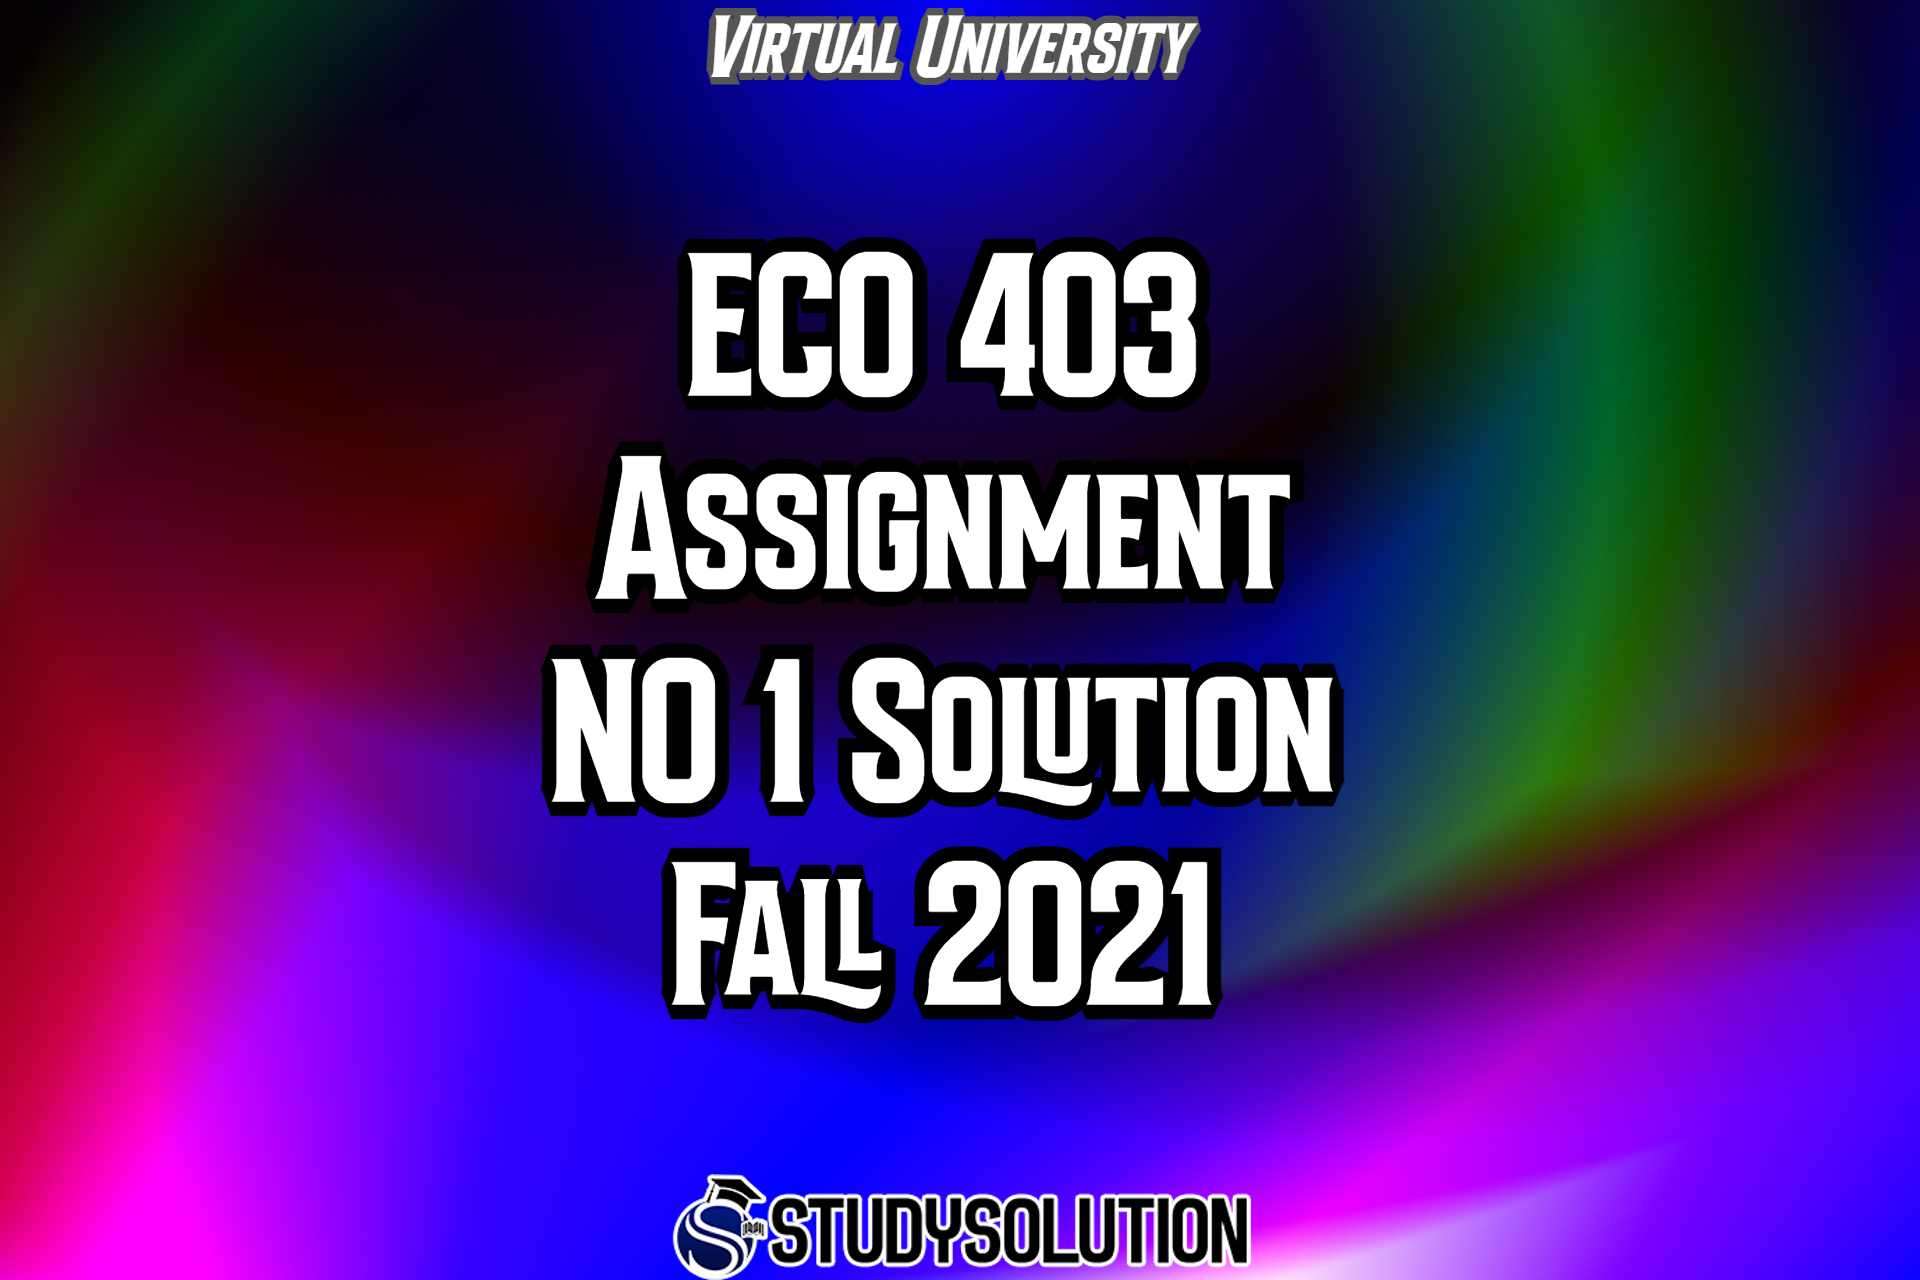 ECO403 Assignment NO 1 Solution Fall 2021